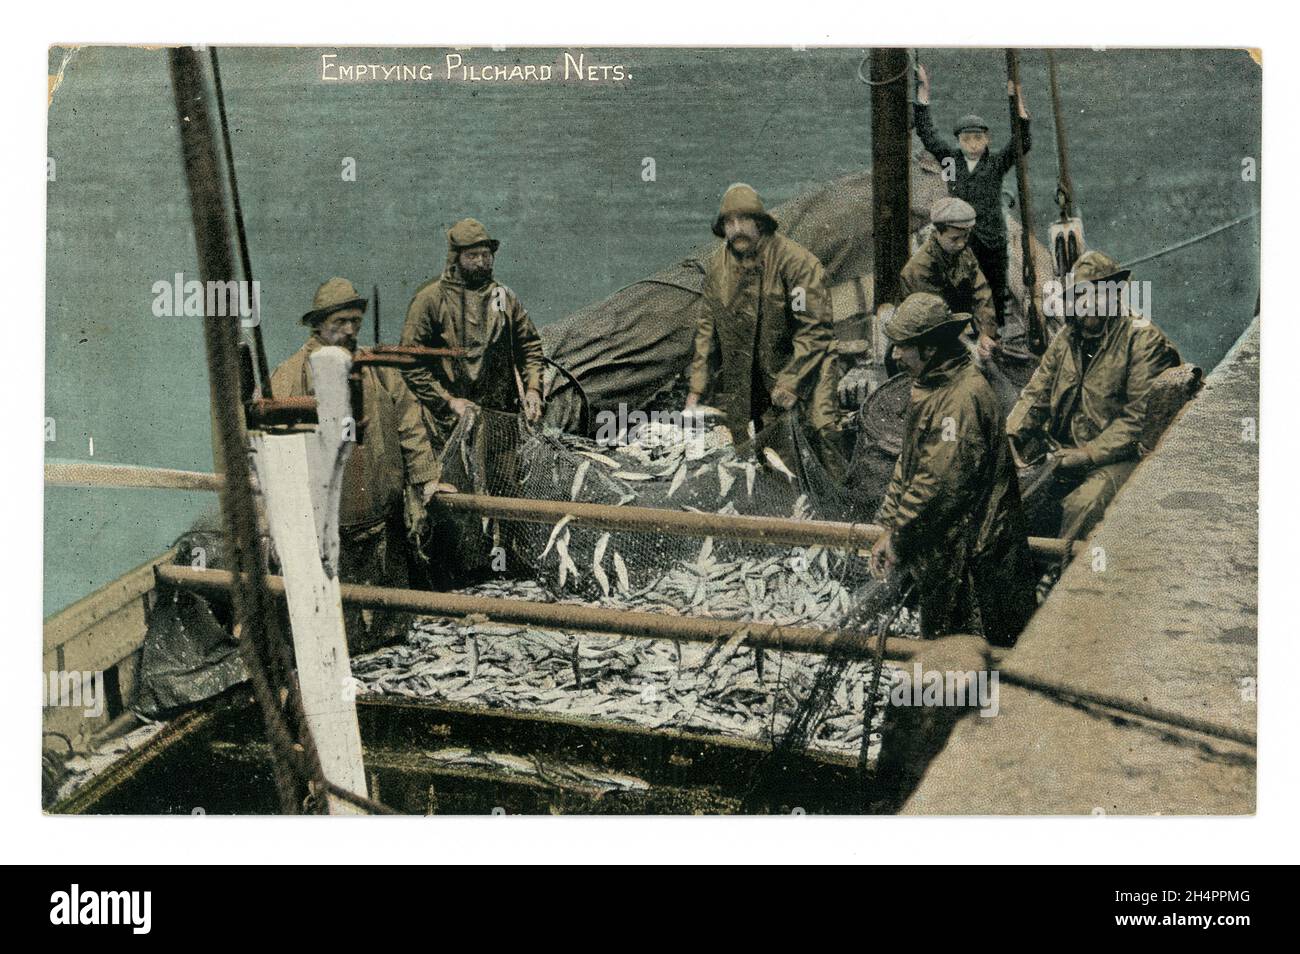 Original postal teñida de principios de 1900 de los pescadores vaciando las pillas (sardinas) de las redes, (posiblemente redes de sena) Serie de Argall, alrededor de 1910 - Cornwall. Foto de stock